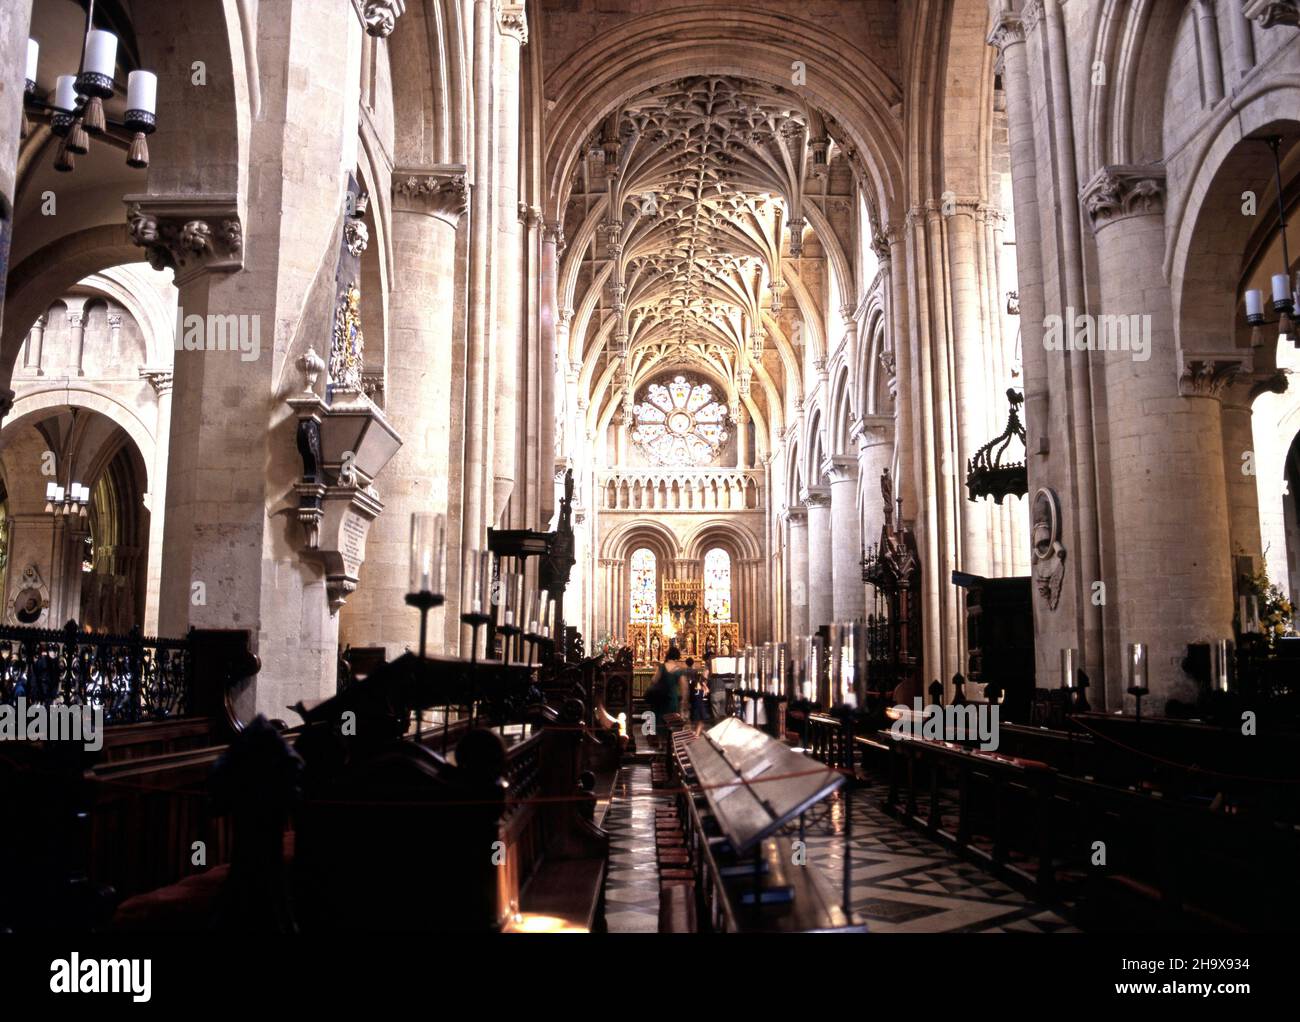 Nave de la Iglesia de Cristo Catedral, Oxford, Oxford, Reino Unido. Foto de stock